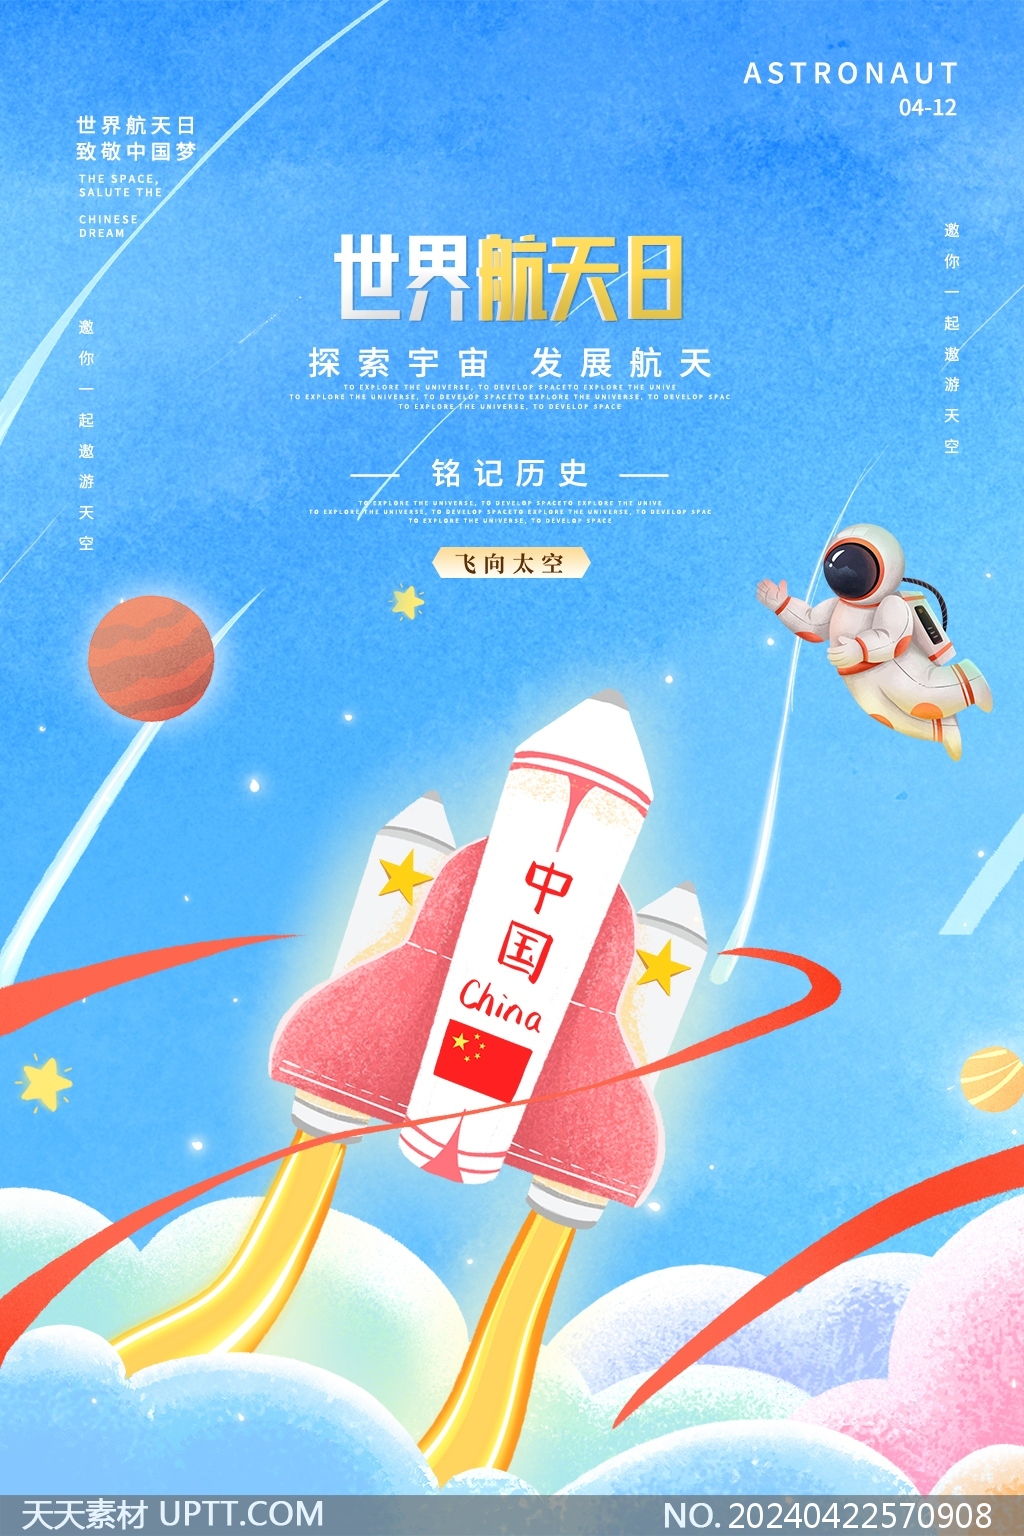 神州飞船宇航员儿童画风中国航天日海报设计